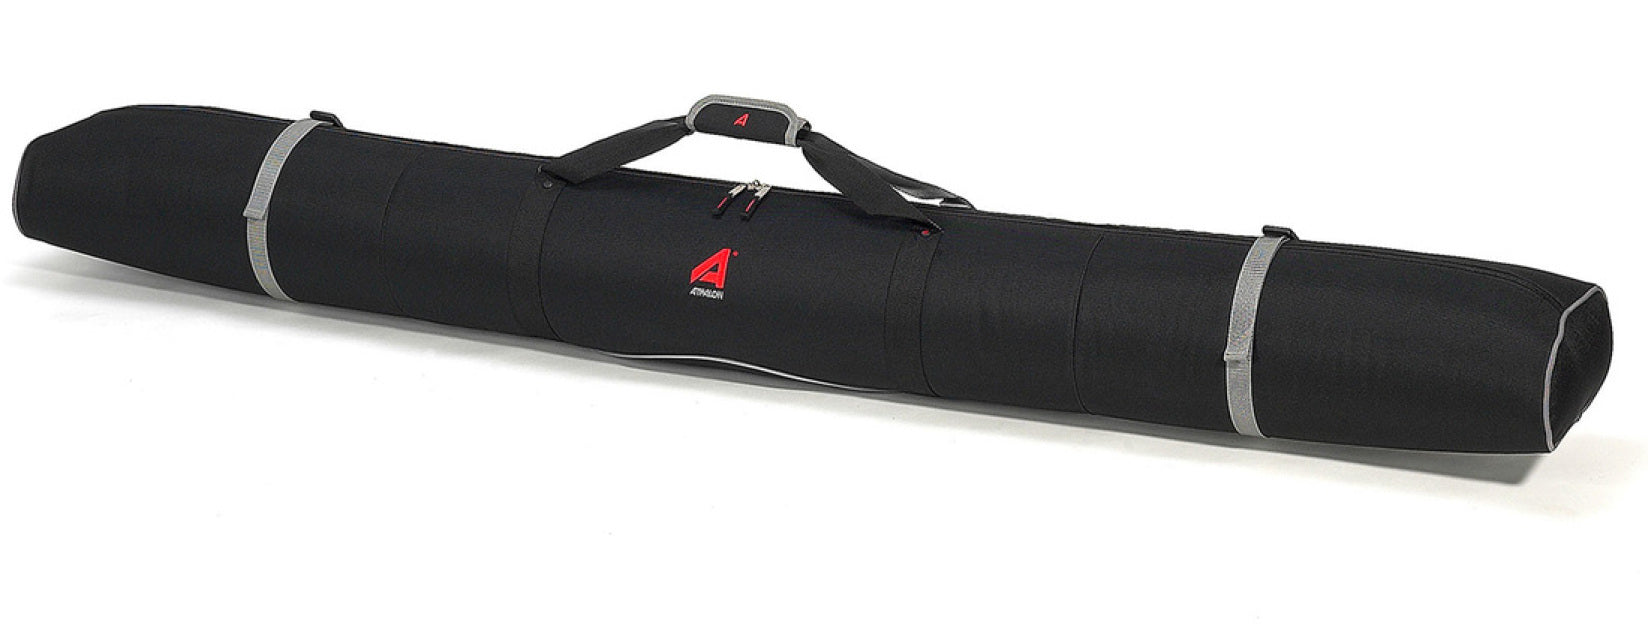 Athalon Single Padded Ski Bag